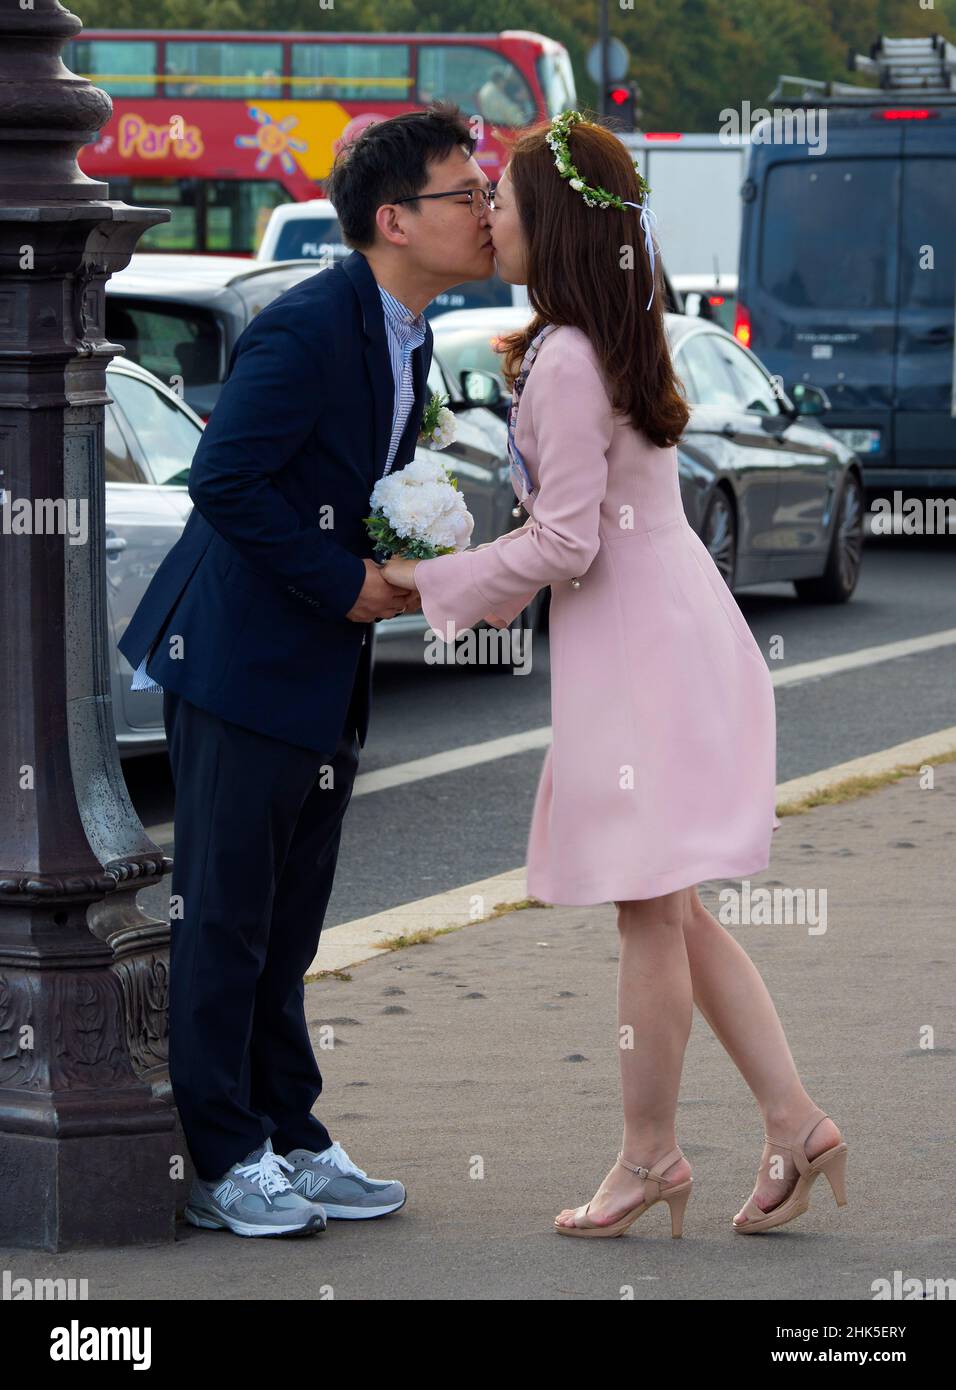 París tiene la reputación de ser la gran ciudad del amor y del romance. Esta pareja parece estar tomando eso literalmente. Visto en el puente Concorde. Comp Foto de stock